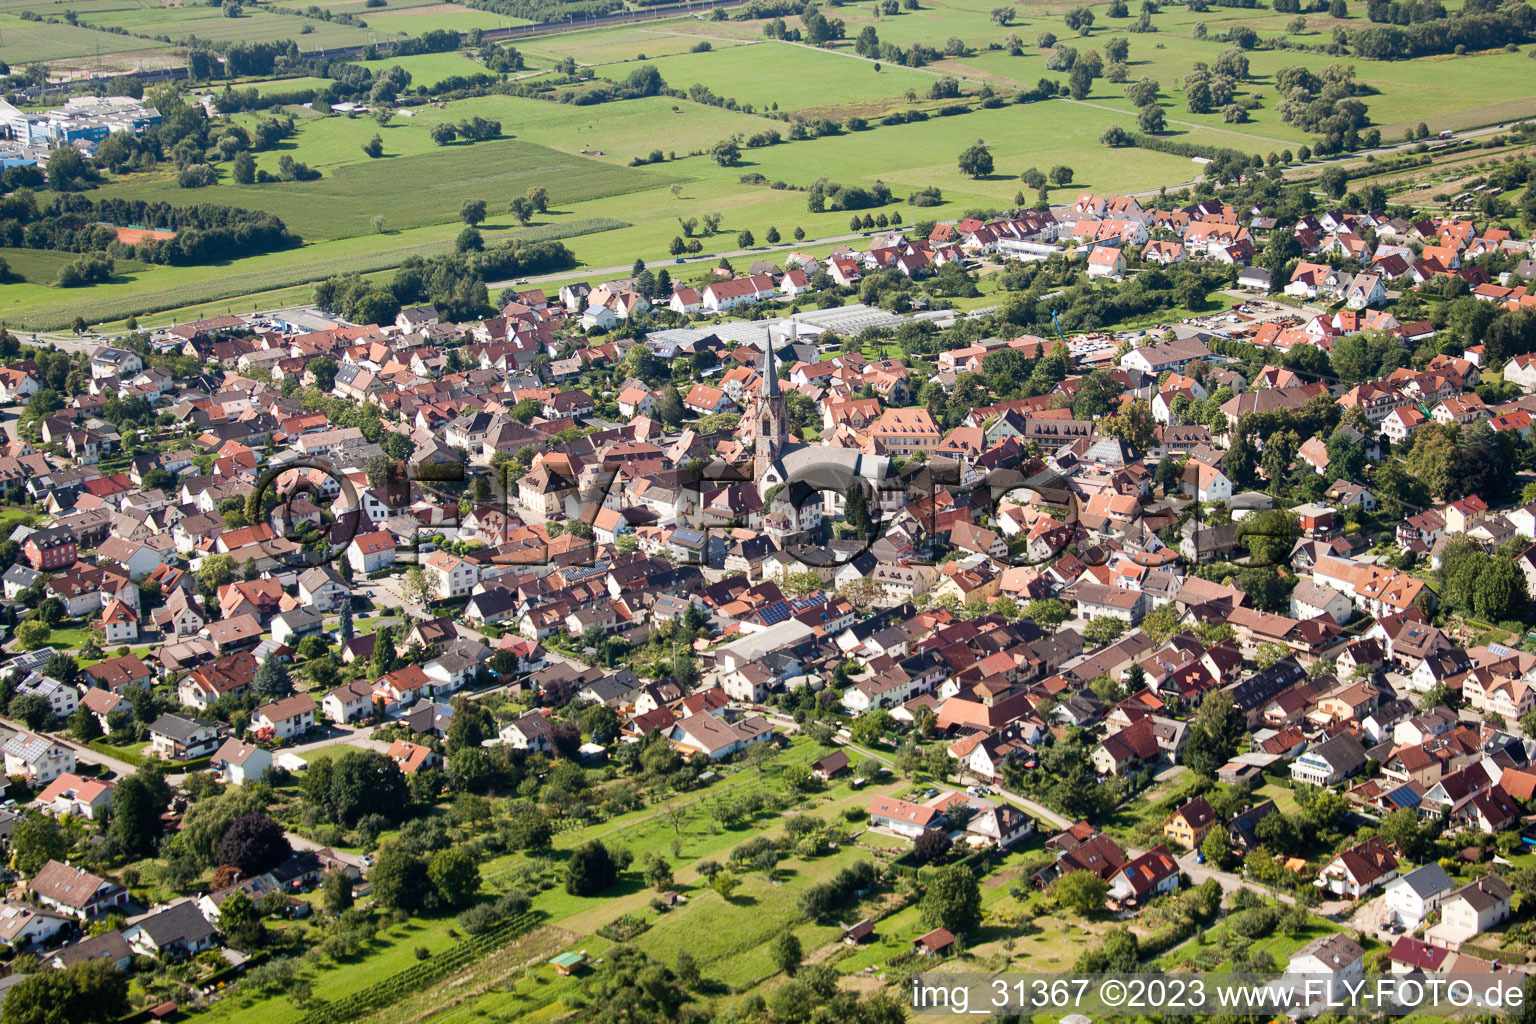 Steinbach im Bundesland Baden-Württemberg, Deutschland aus der Drohnenperspektive